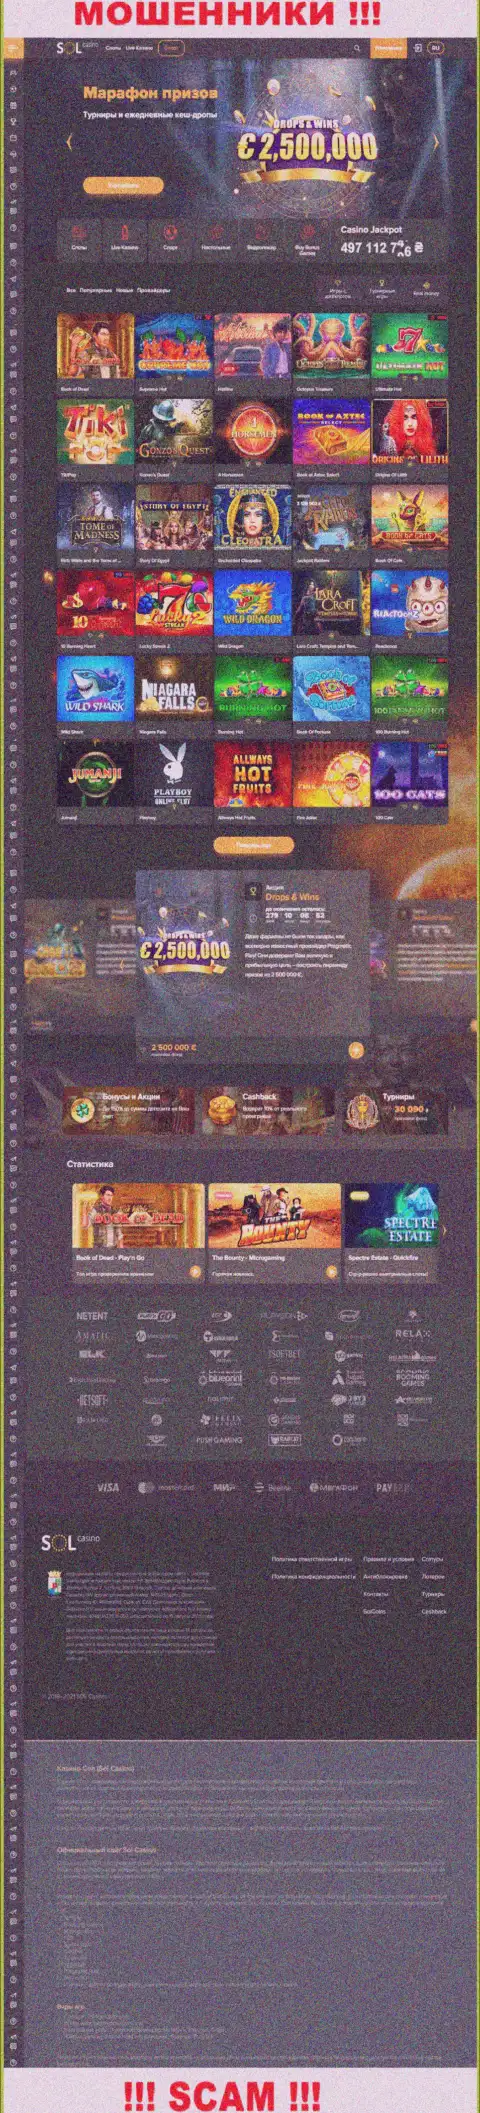 Главная страница официального веб-портала воров Sol Casino